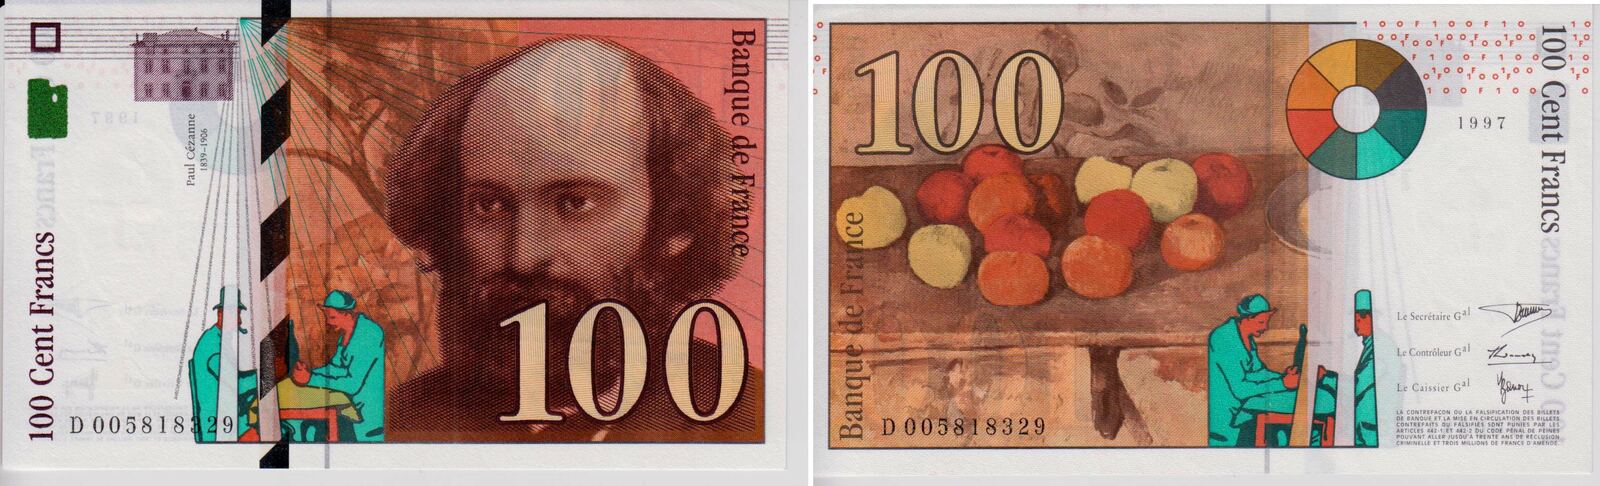 Нужны парижу деньги. Французские деньги 500. Пробные банкноты Франции. Деньги в Франции в 1500 годах.